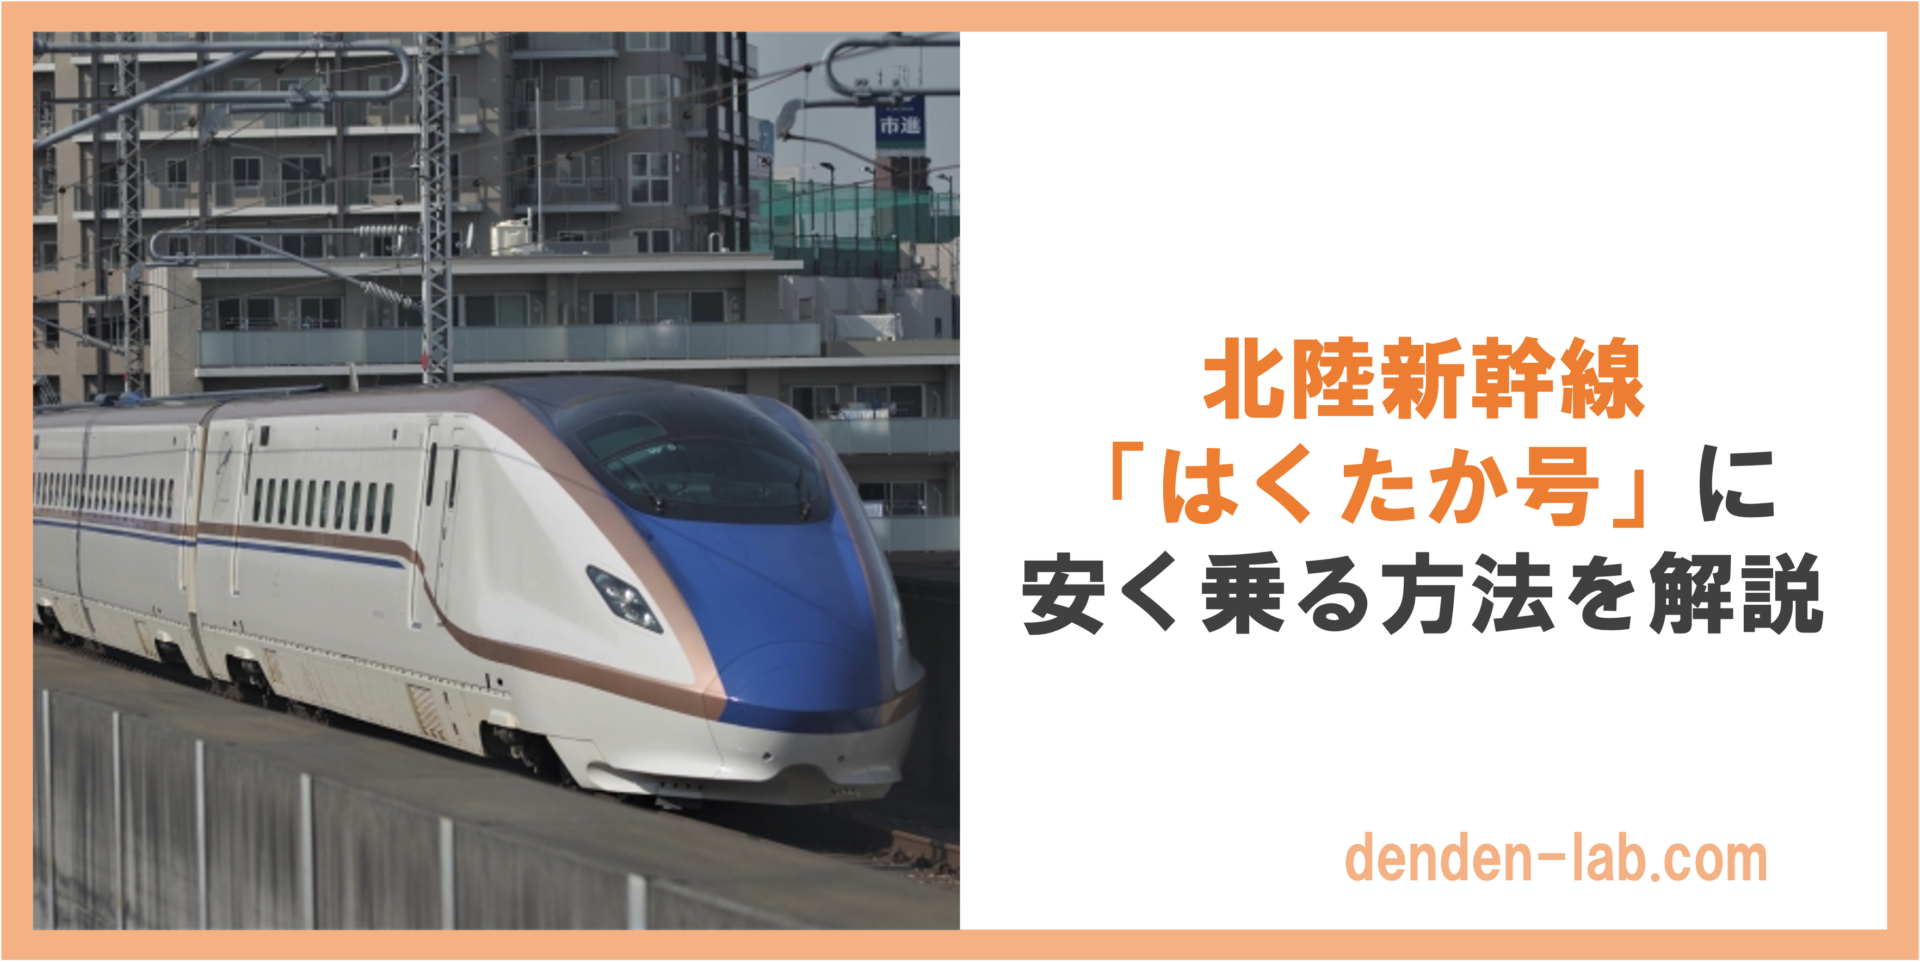 北陸新幹線 「はくたか号」に 安く乗る方法を解説 北陸新幹線 「はくたか号」に 安く乗る方法を解説